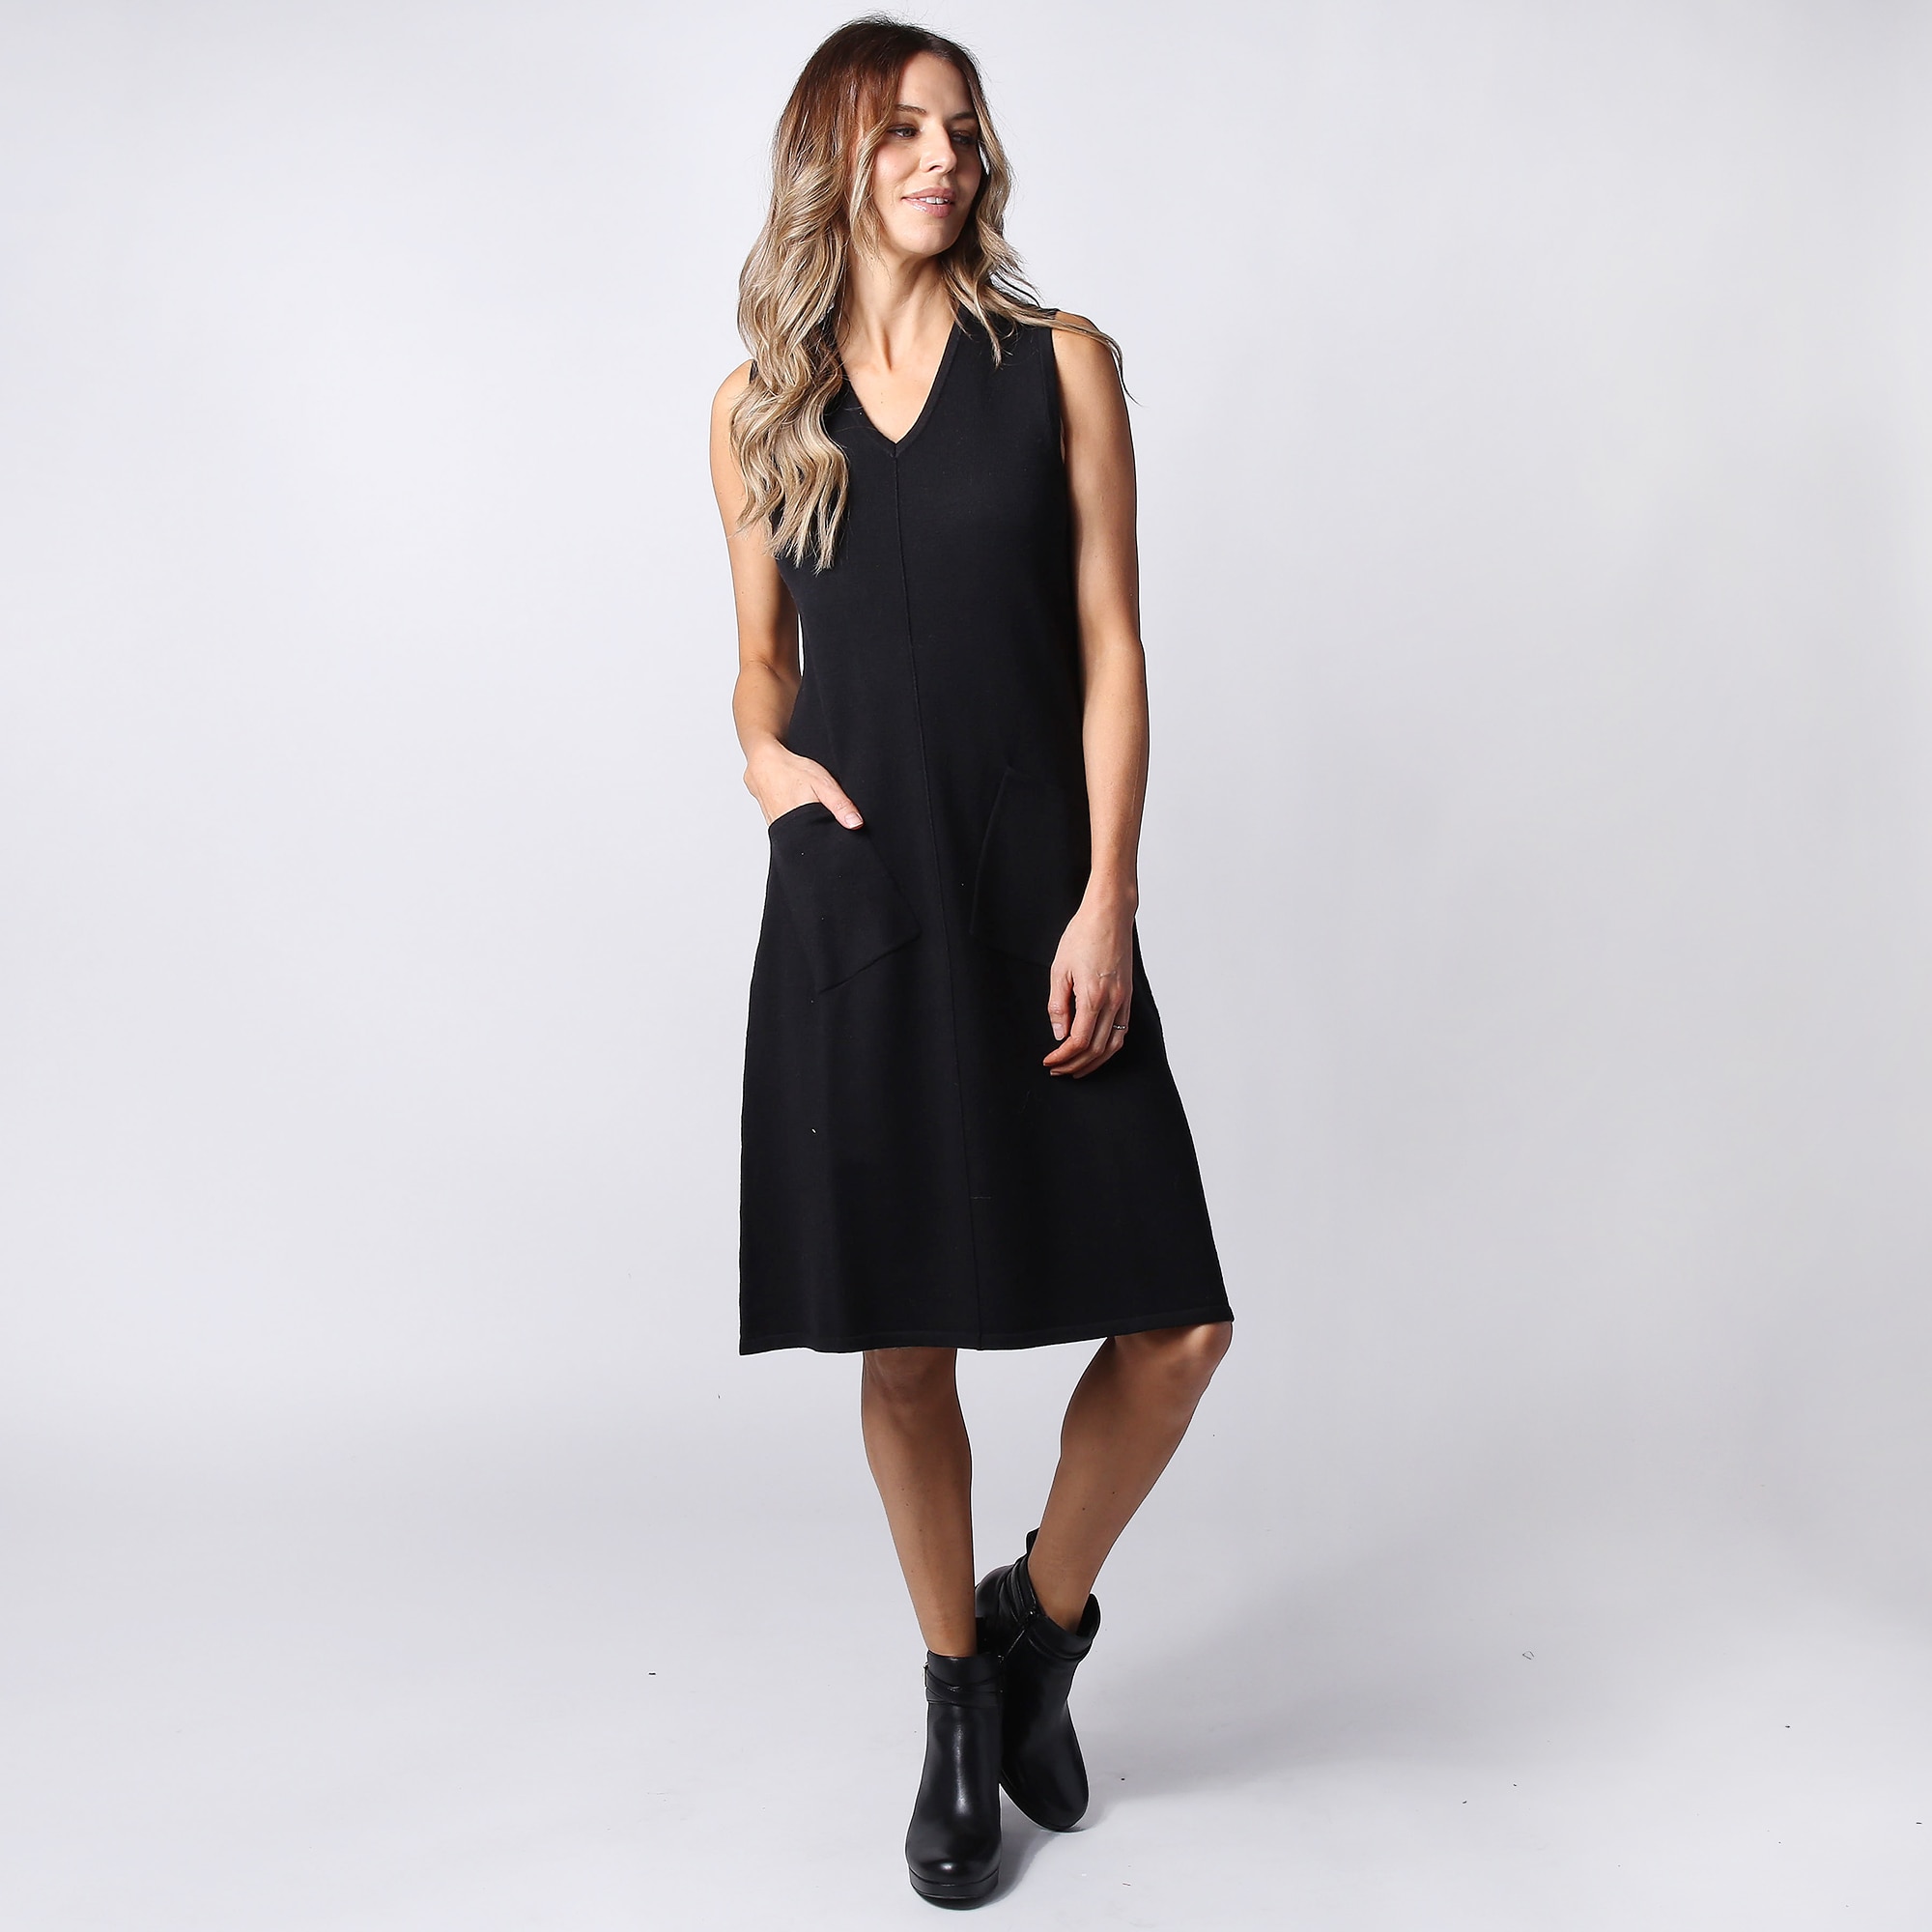 Wynne Layers Soft Knit Sleeveless V-Neck Dress